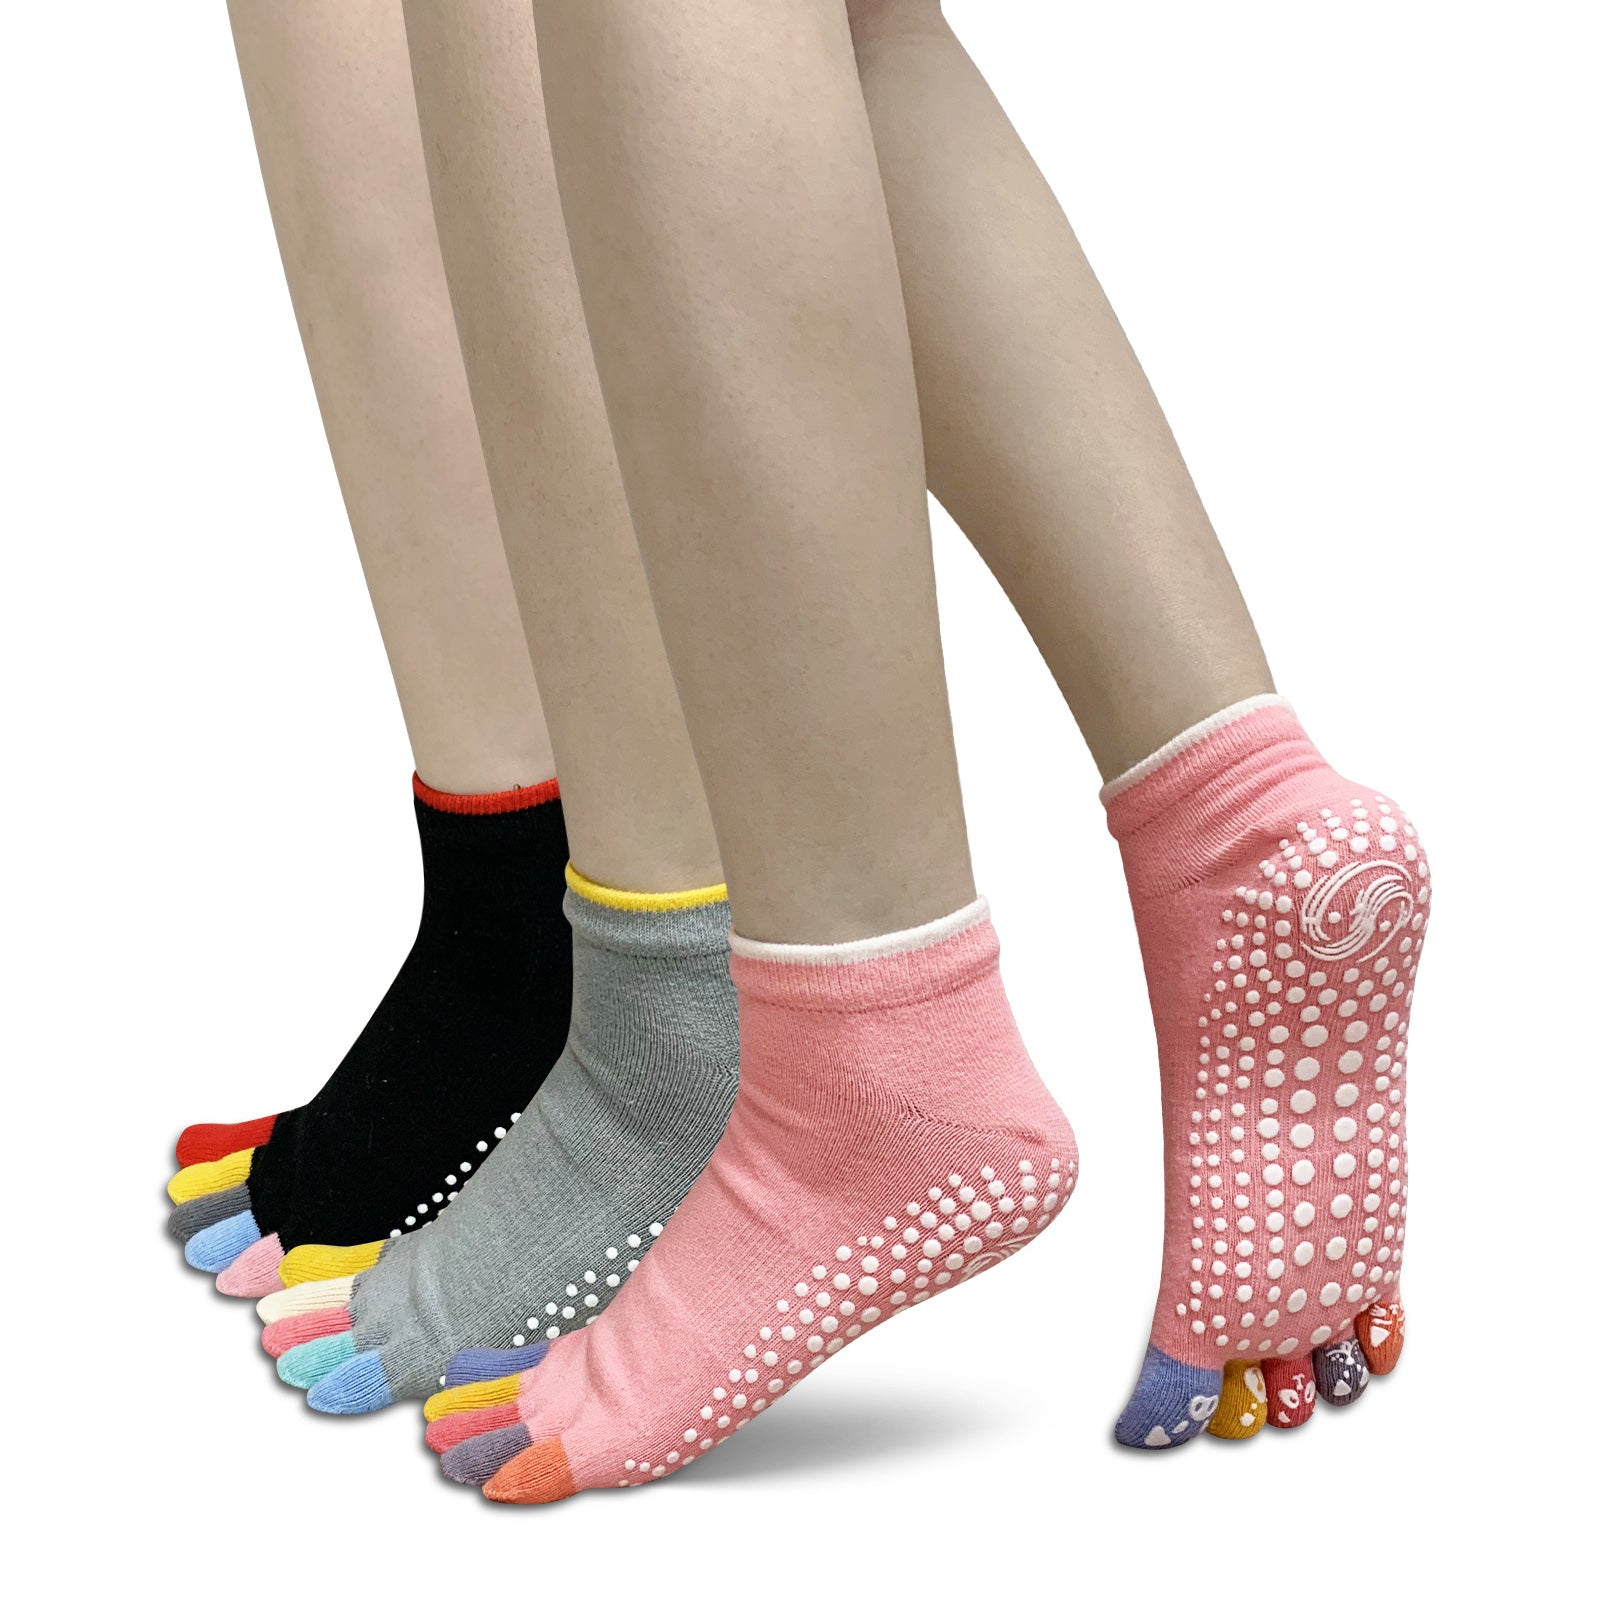 Trampoline socks Non Slip Yoga Socks with Grips Women Anti-Skid